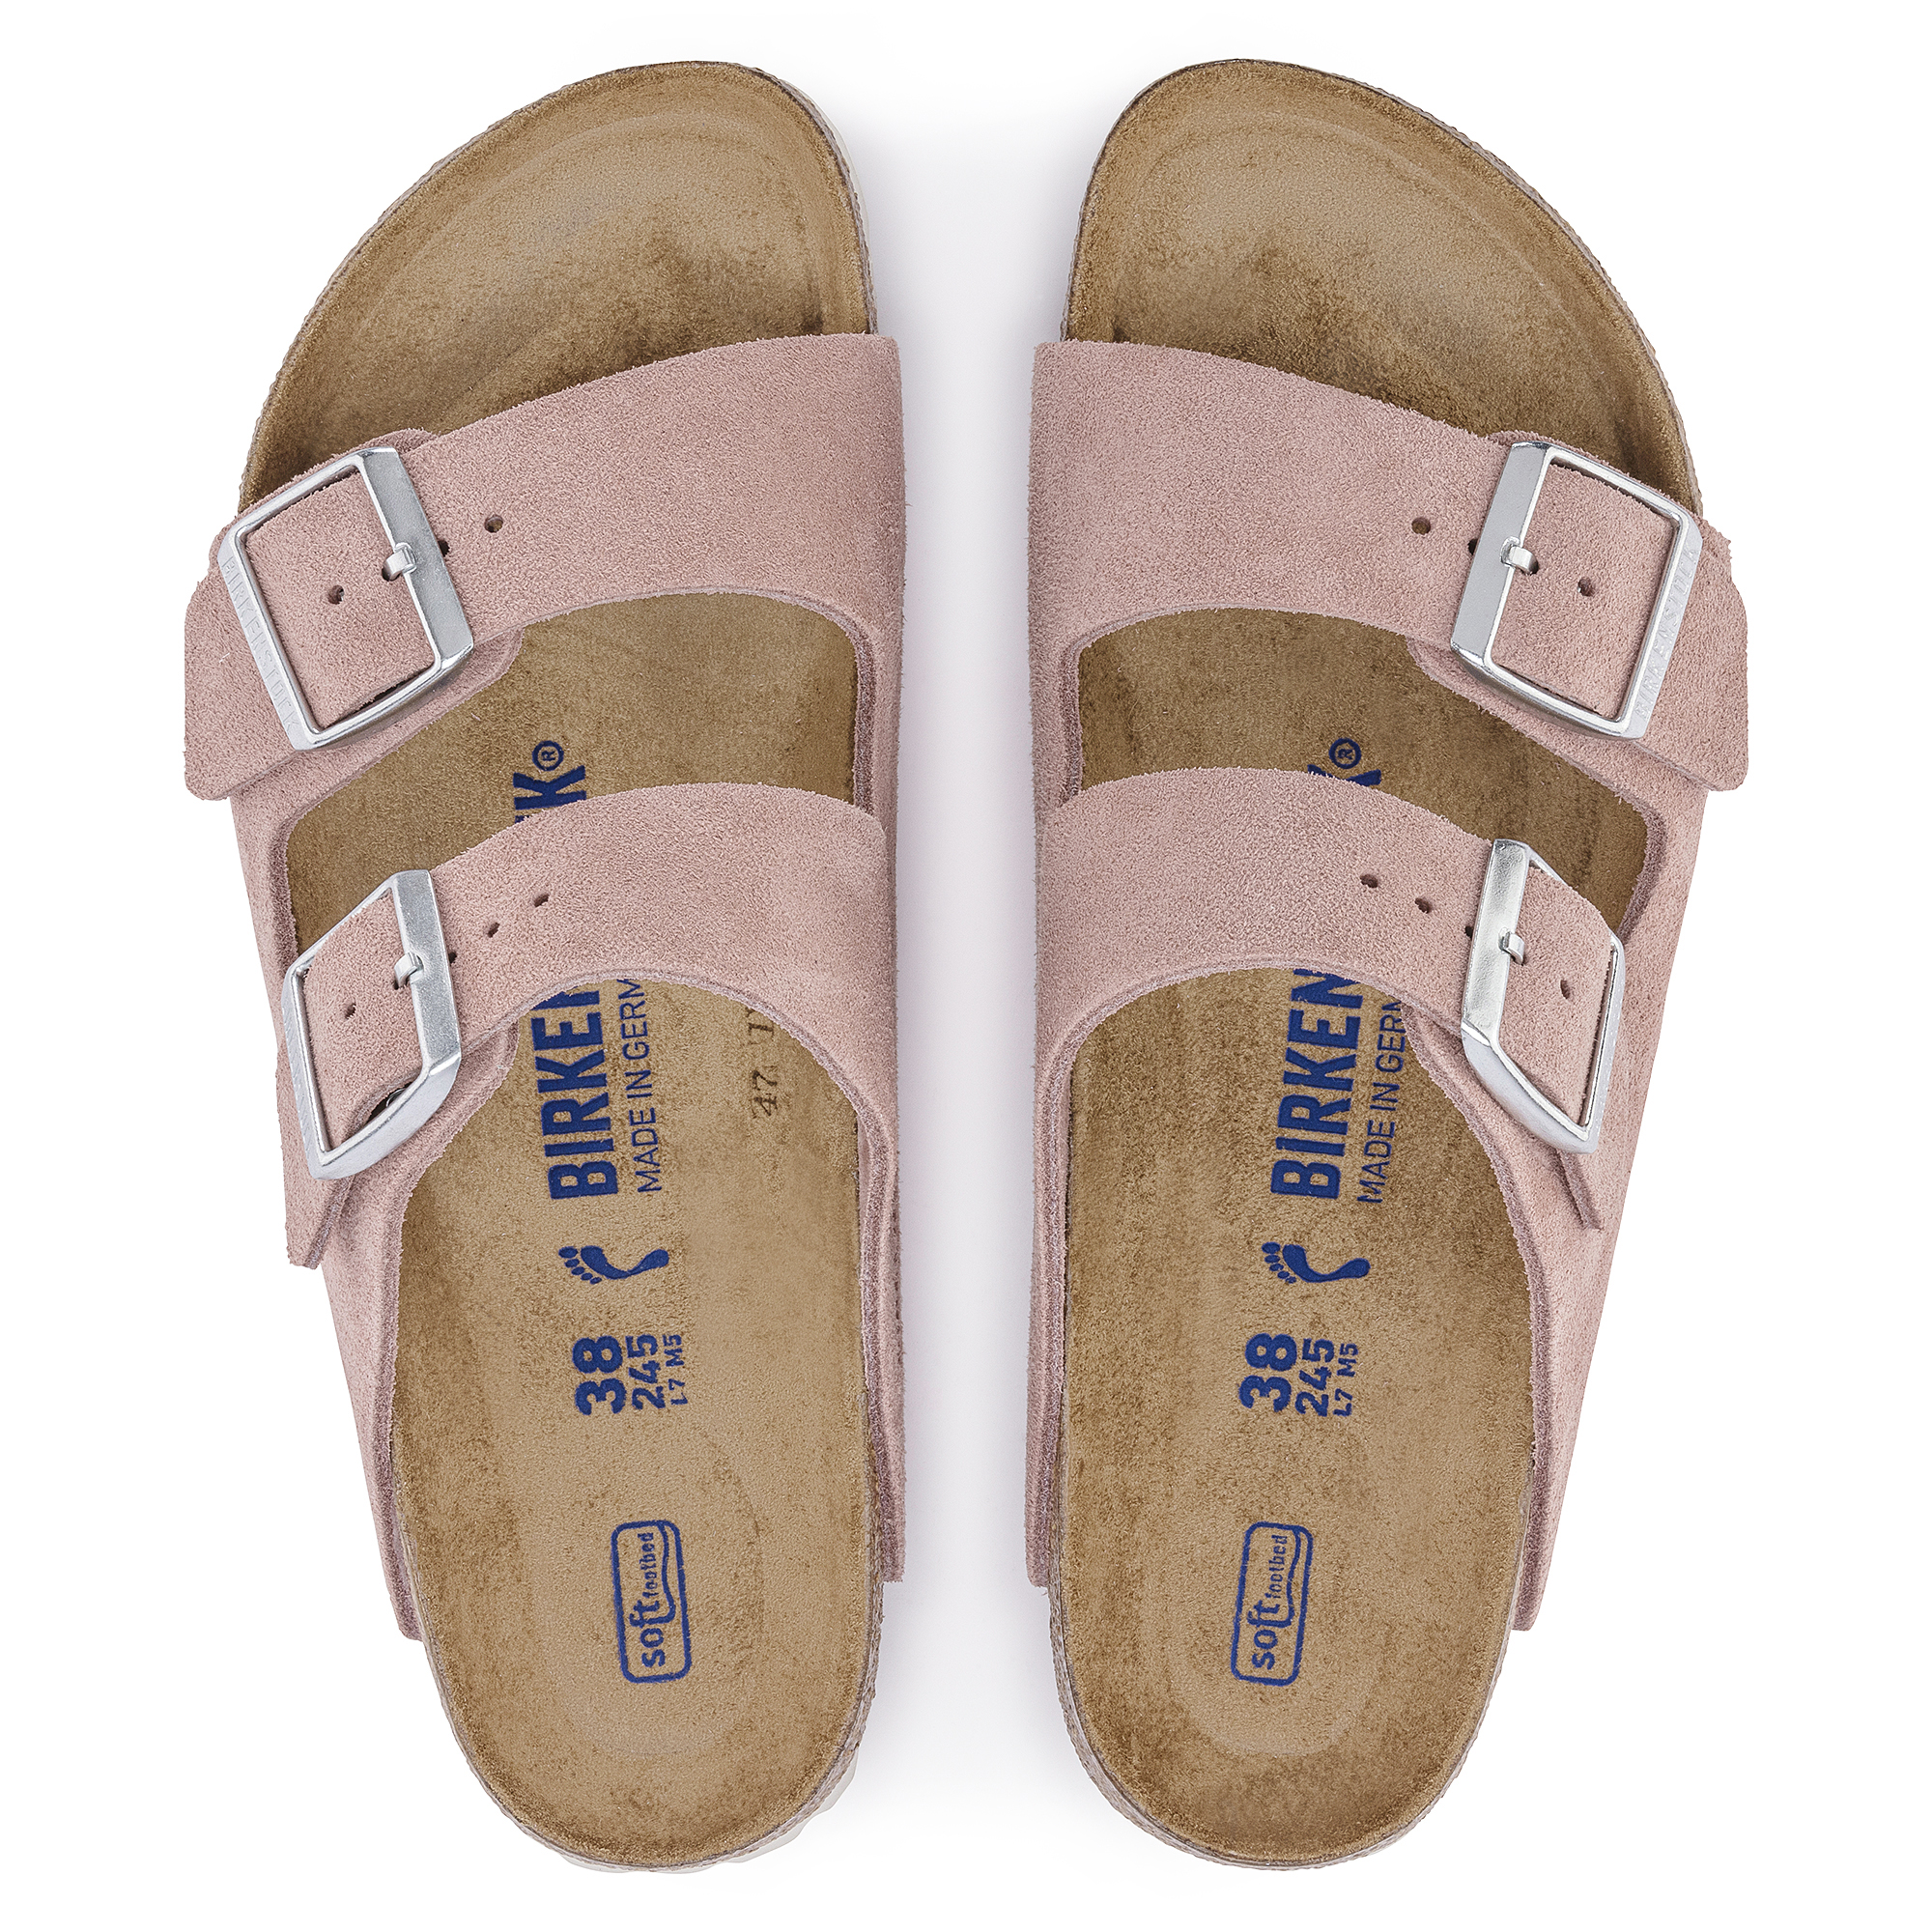 miste dig selv Læsbarhed Uforenelig Arizona Soft Footbed Suede Leather Pink Clay | BIRKENSTOCK